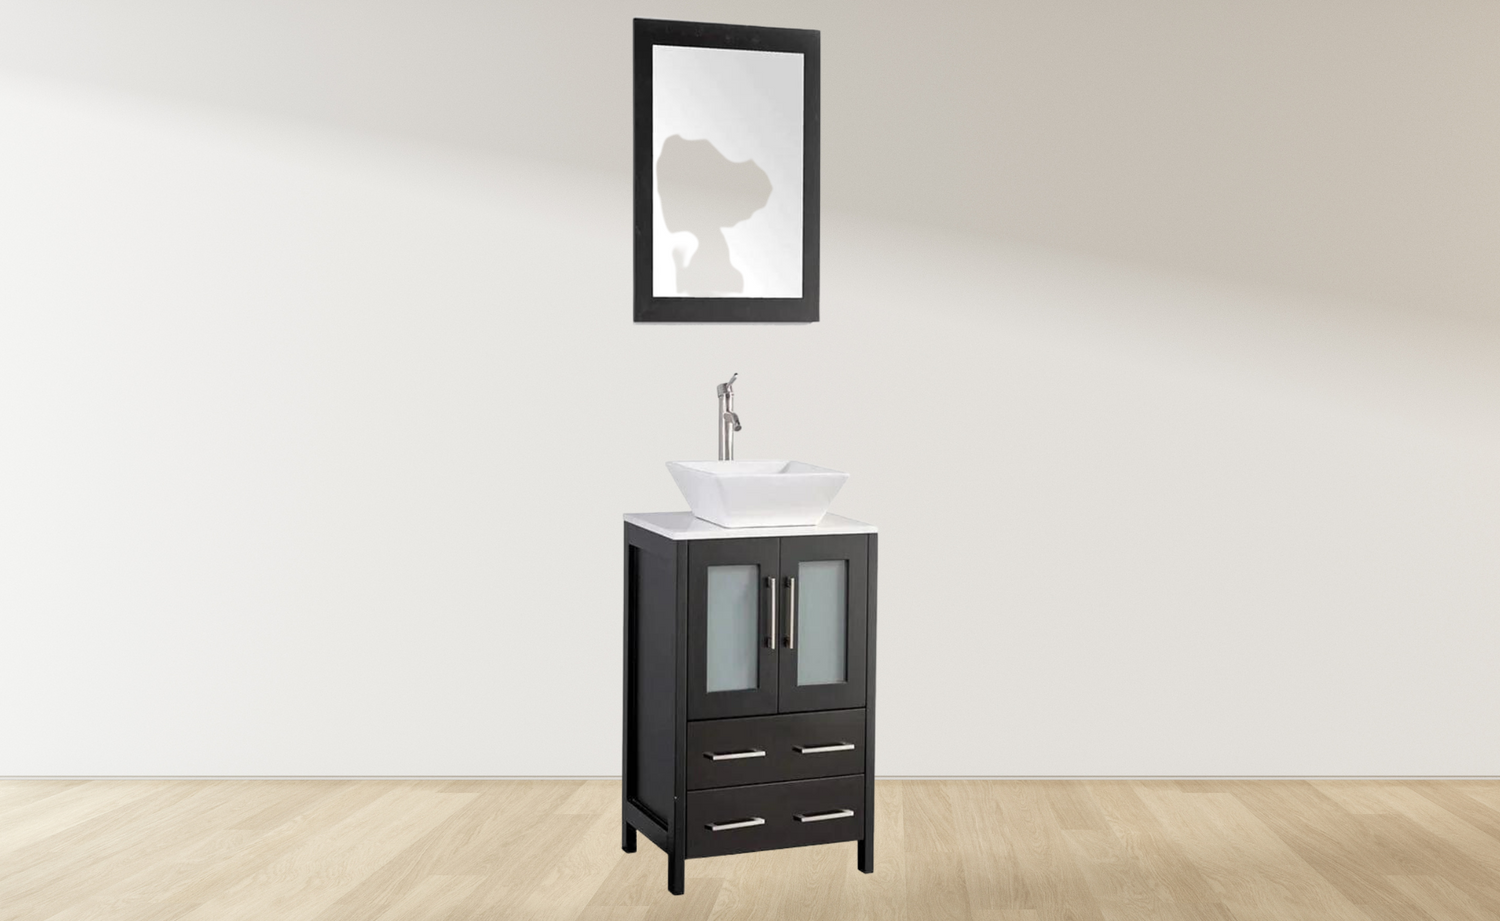 24 in. Single Sink Bathroom Vanity Combo Set in Espresso